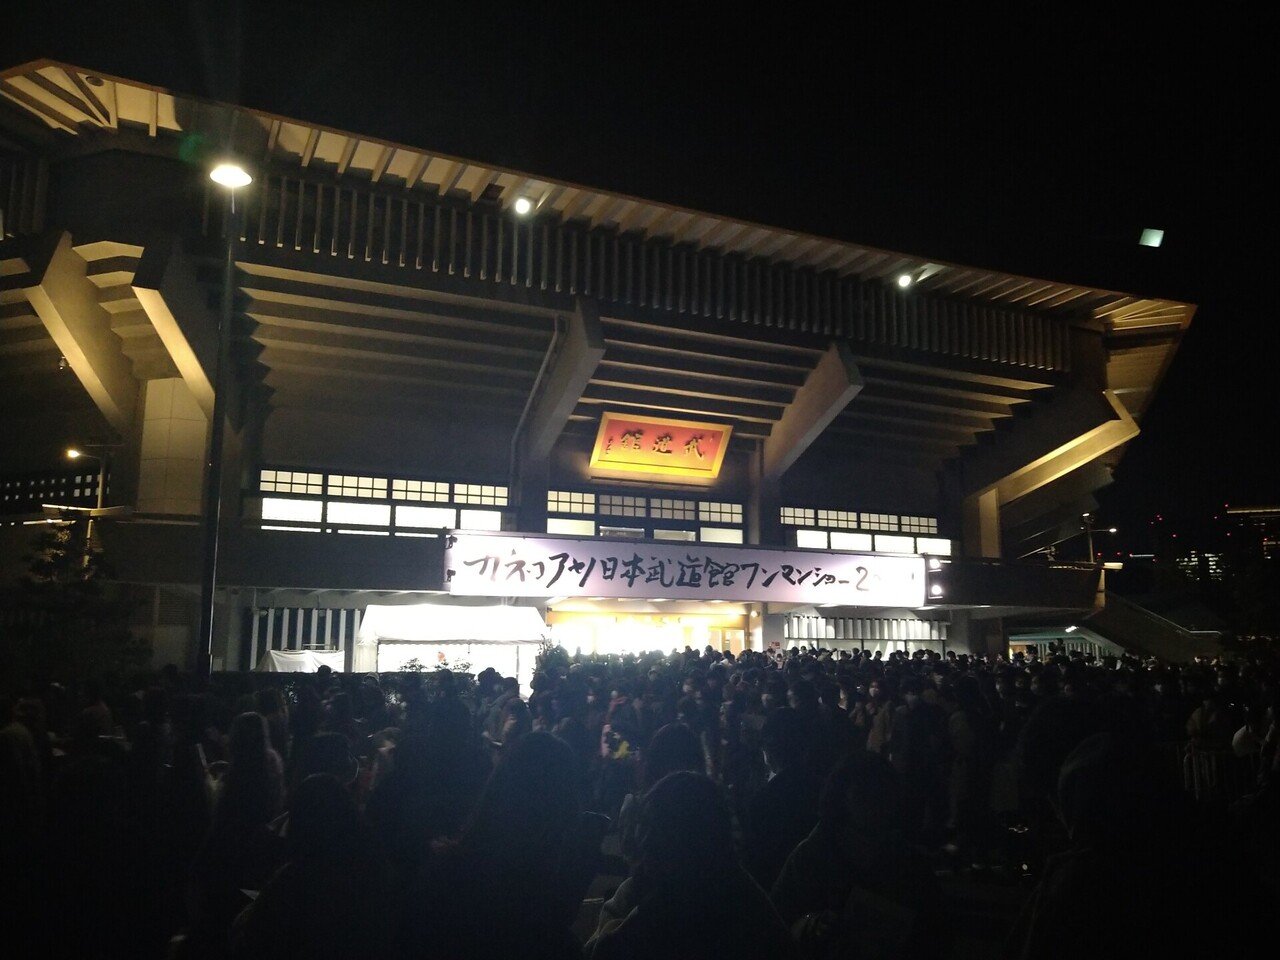 11月29日(月) 『カネコアヤノ日本武道館ワンマンショー2021』 に行っ